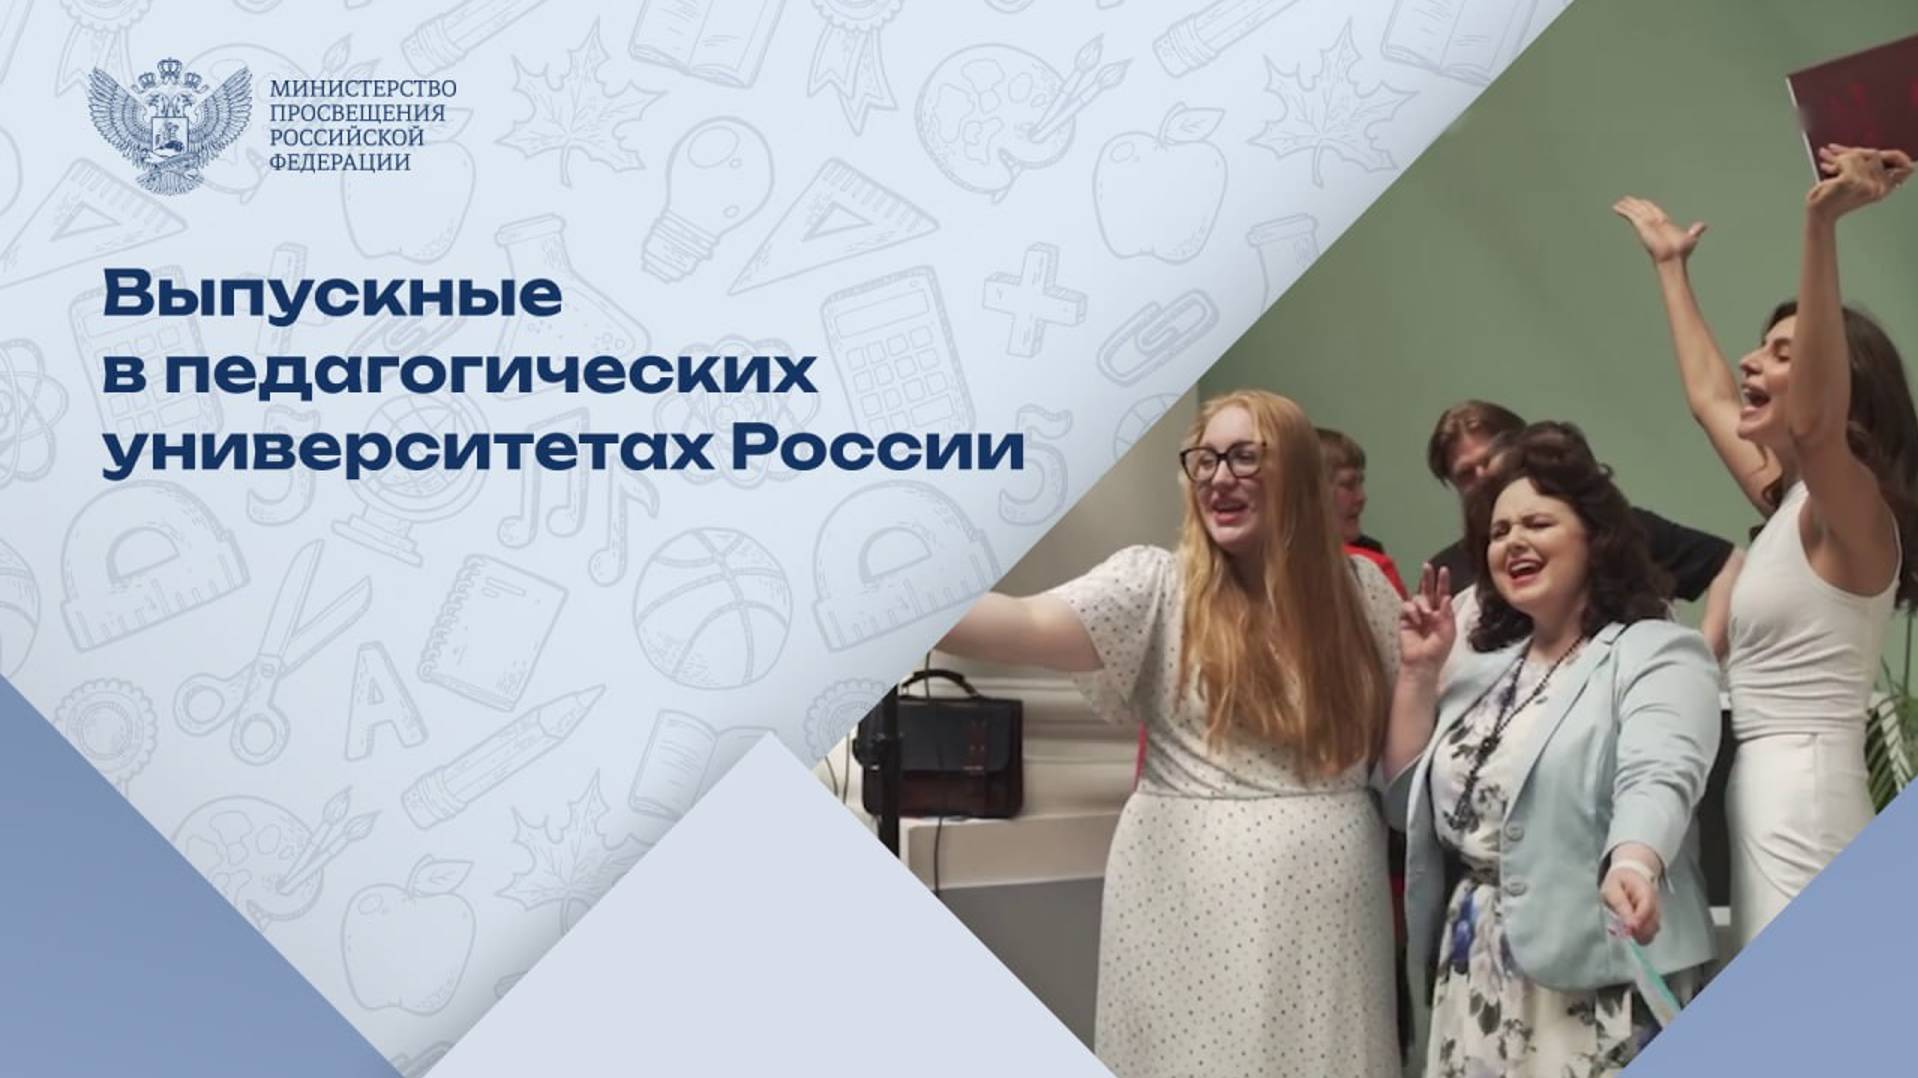 Чествуем будущих учителей России – выпускников педагогических университетов